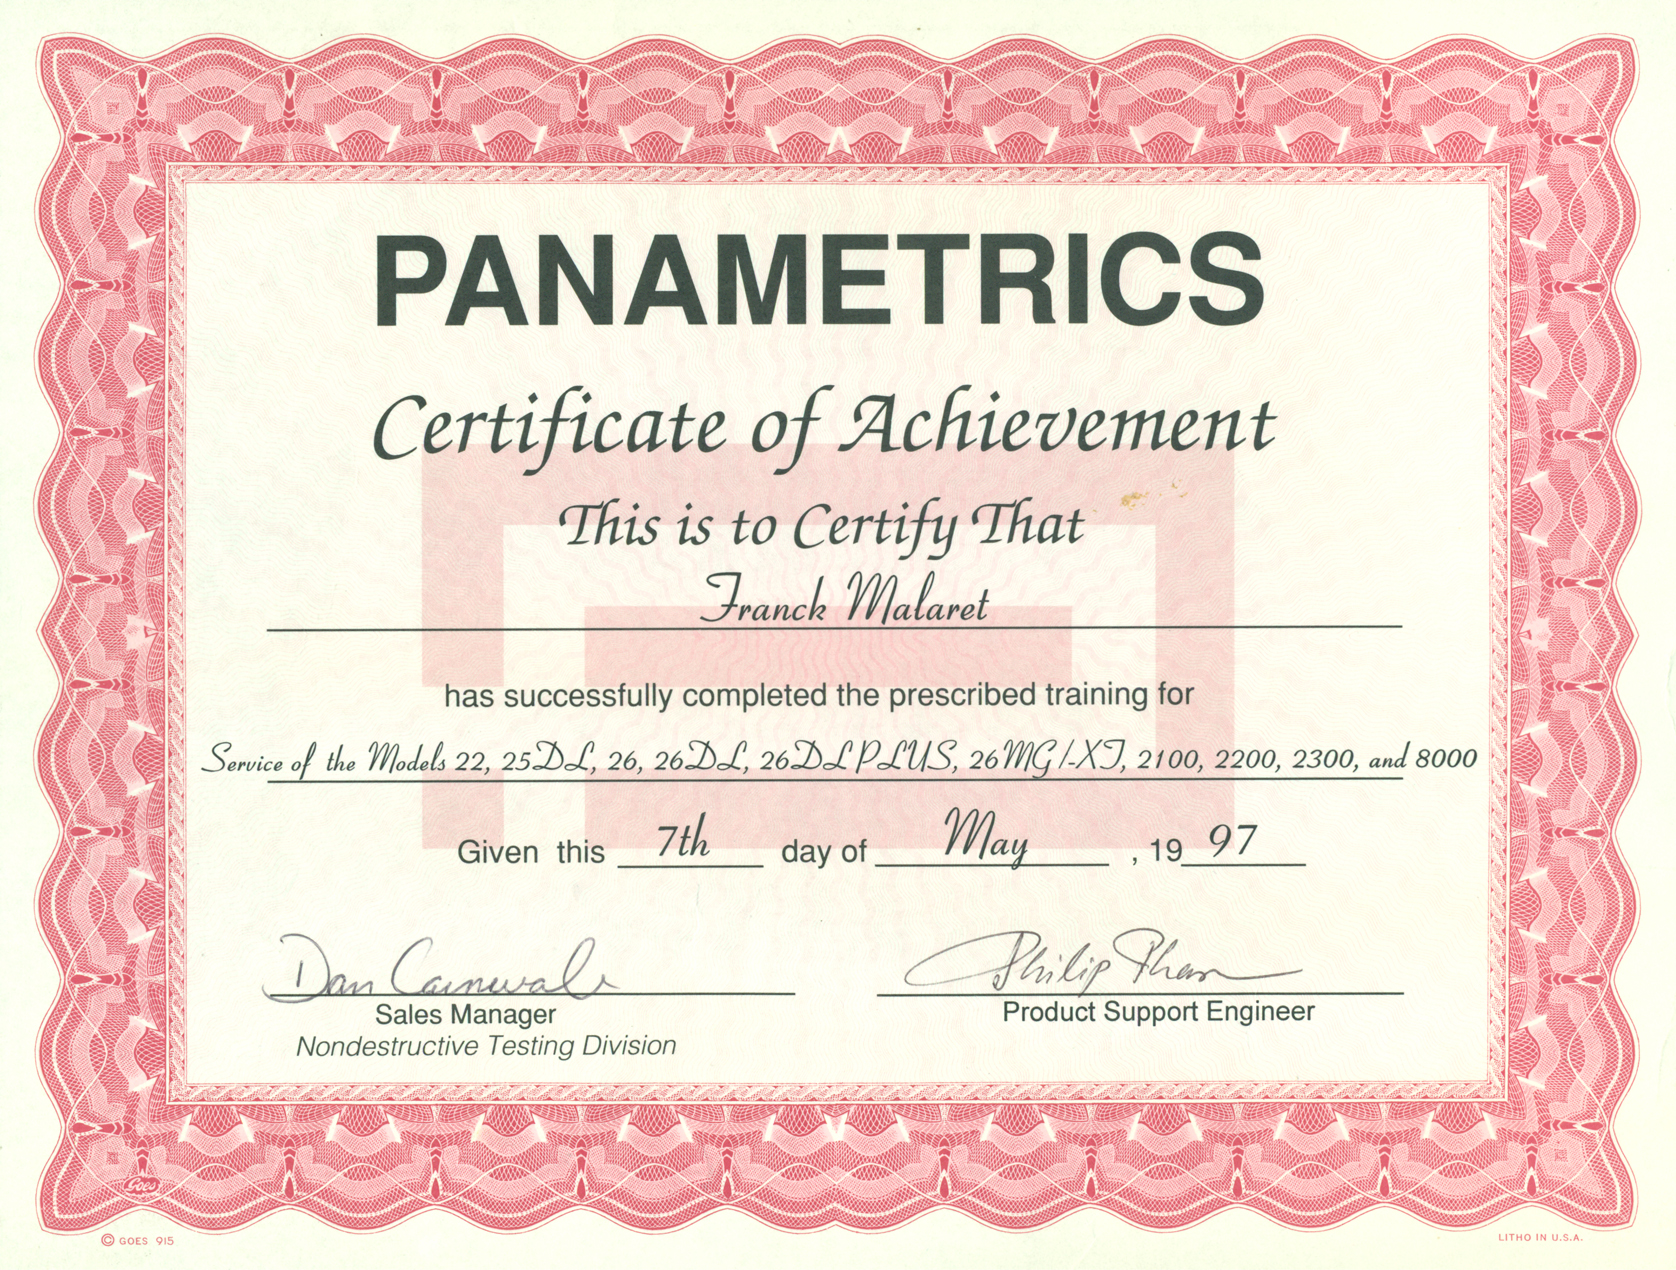 Сертификат Fairyland. Fairyland 2 сертификат. Certificate for achievement. Certificate of achievement English. Proxy certificate invalid